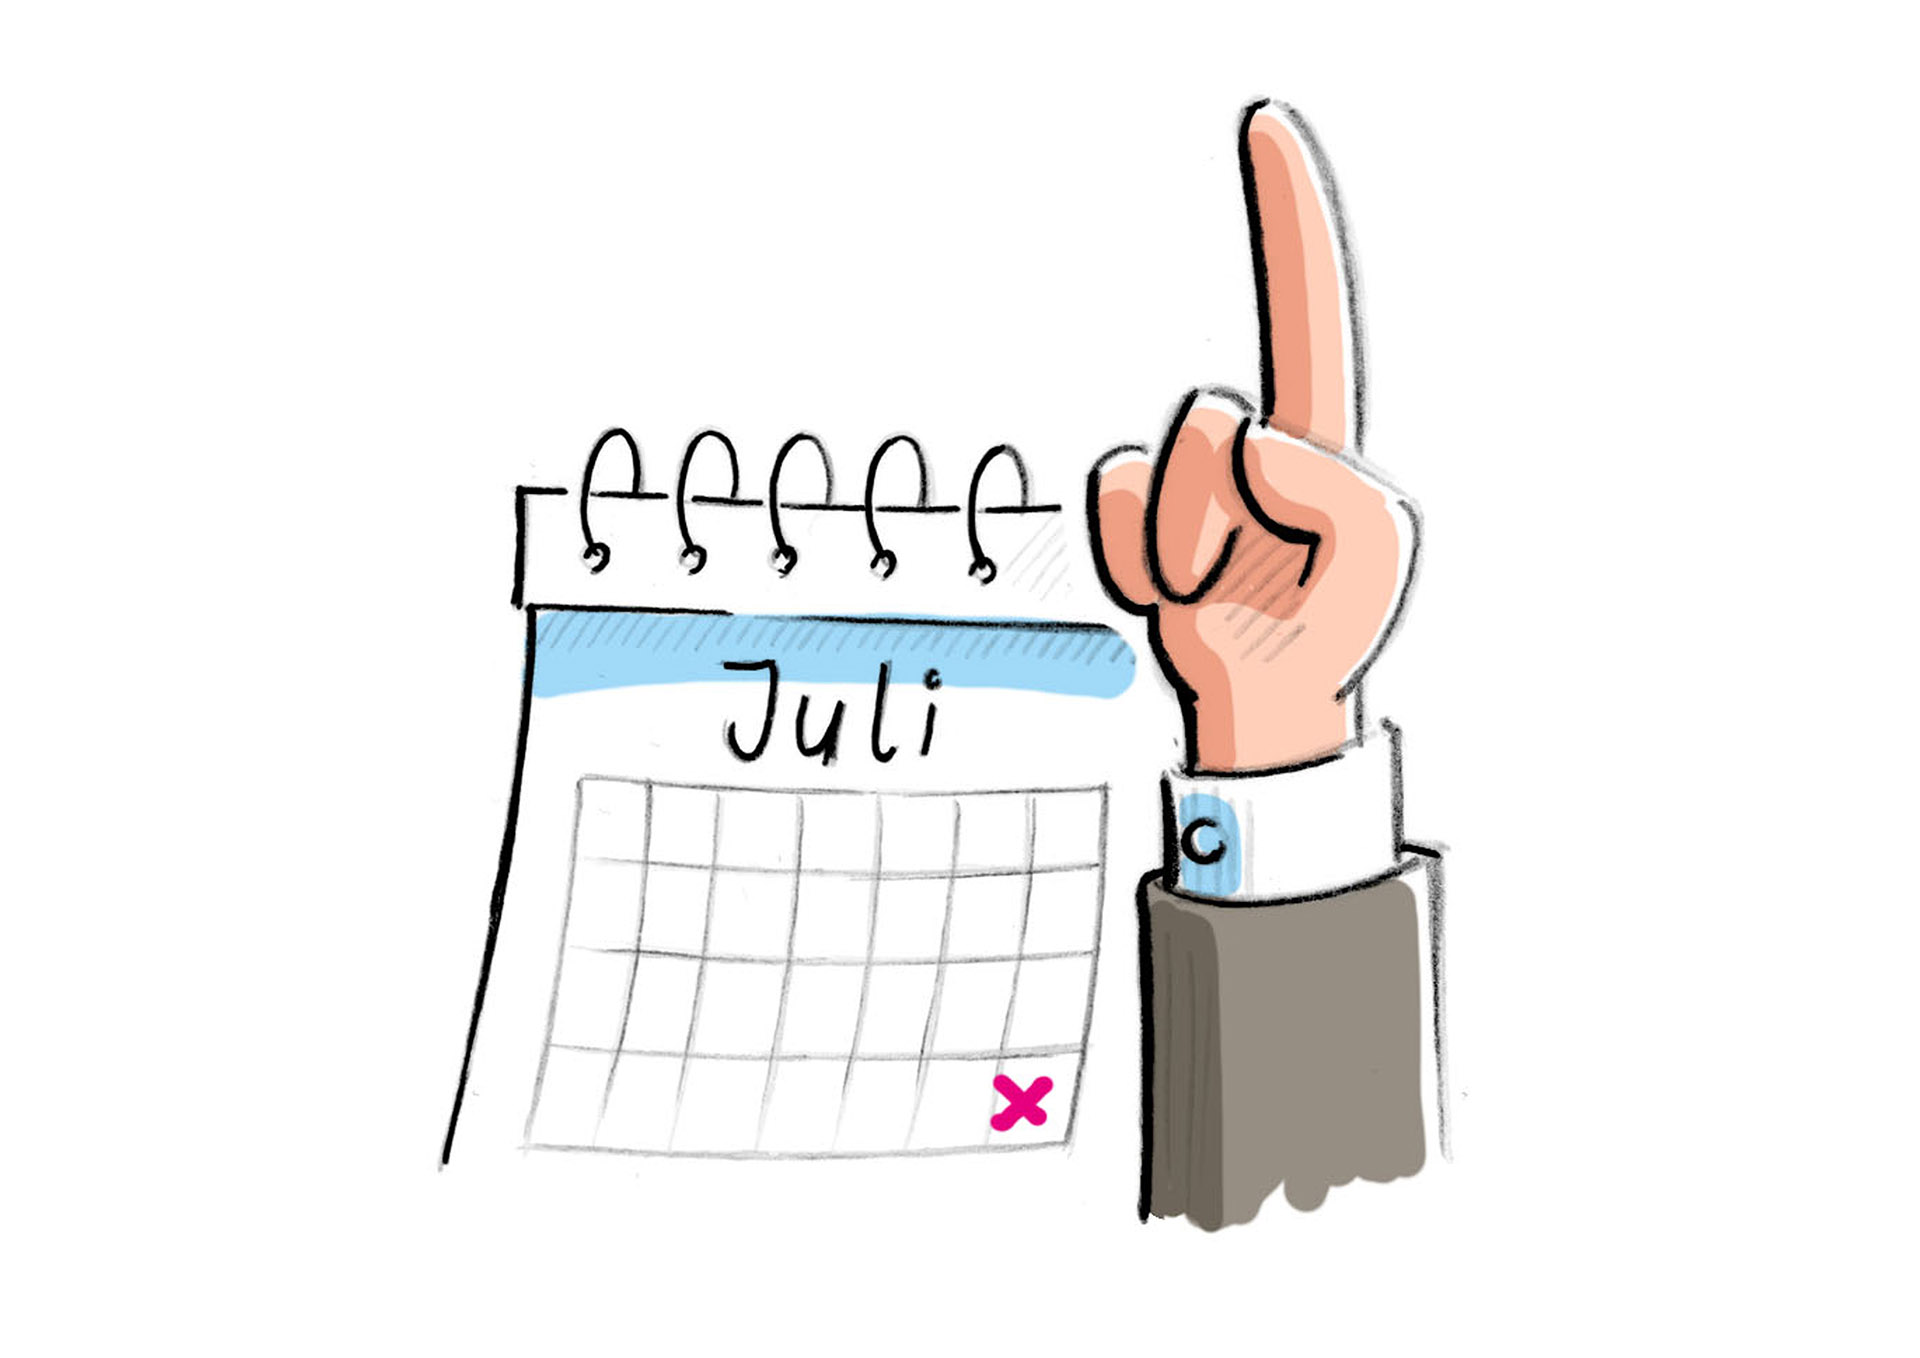 Bild: Monatskalender, letzter Tag im Juli markiert; Hand mit erhobenem Zeigefinger